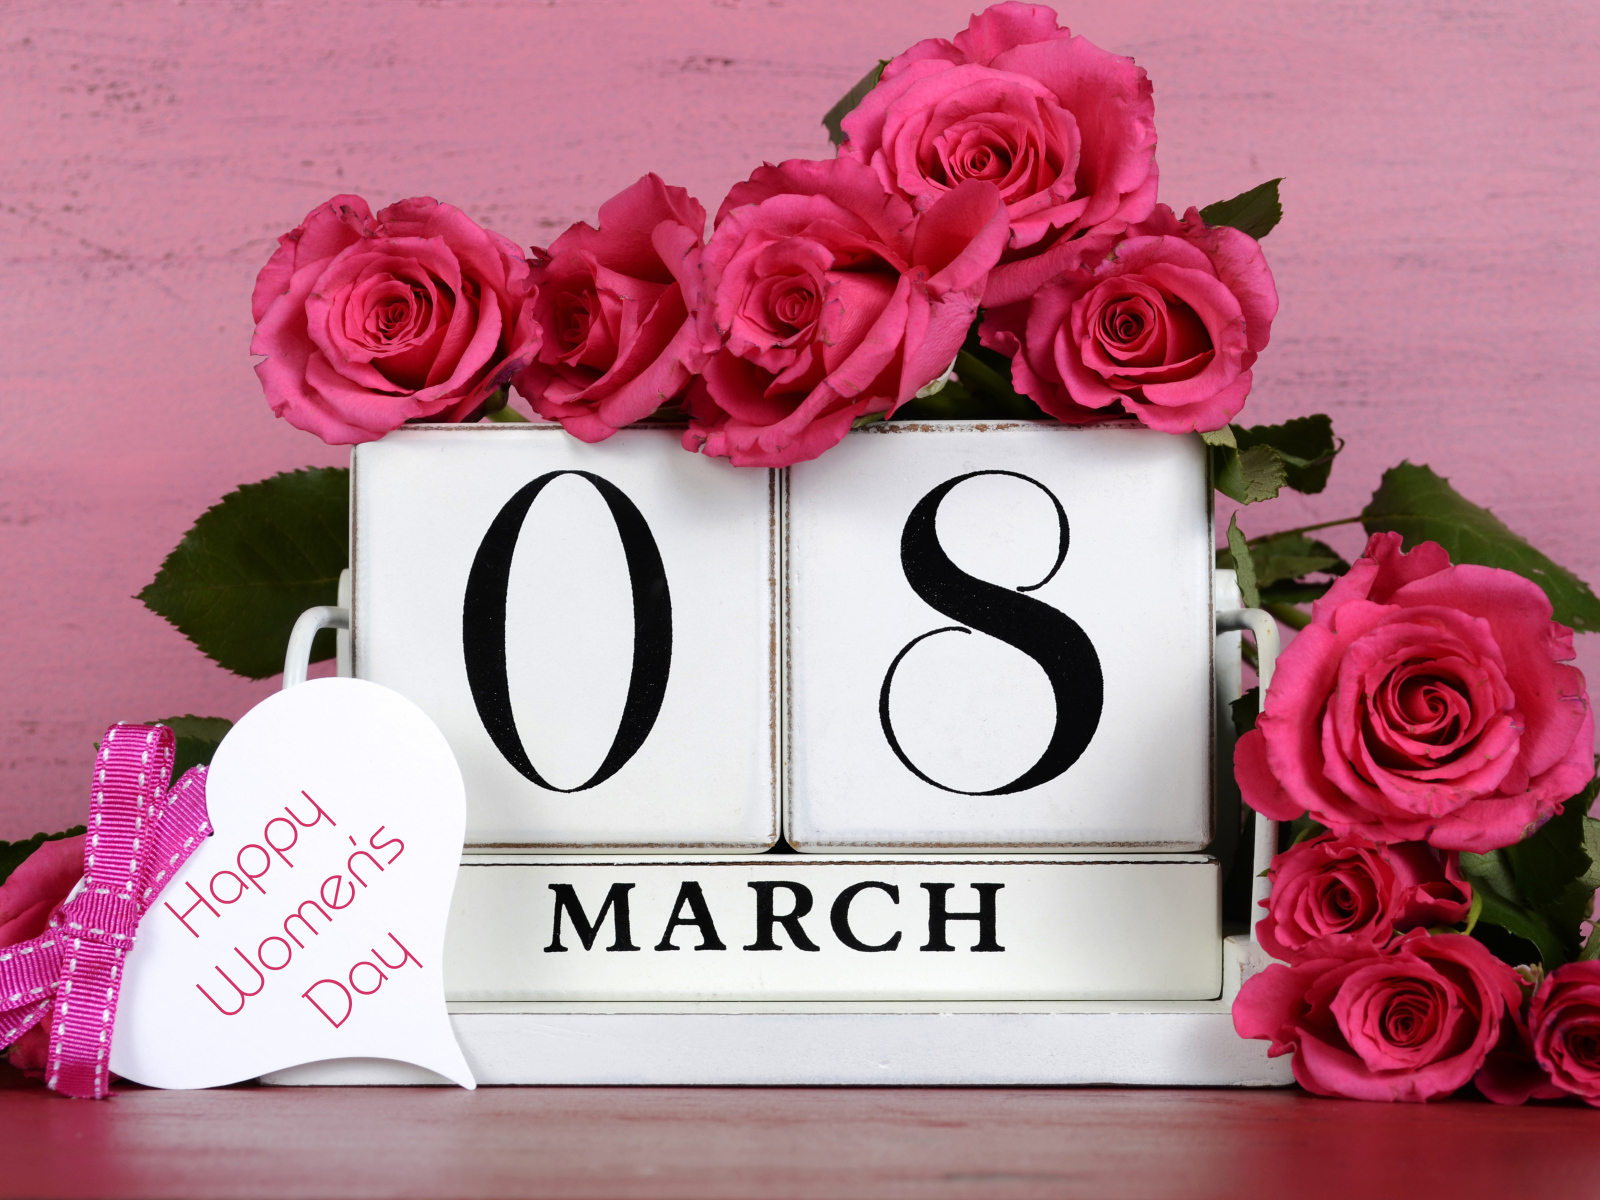 Красные розы на розовом фоне на Международный женский день